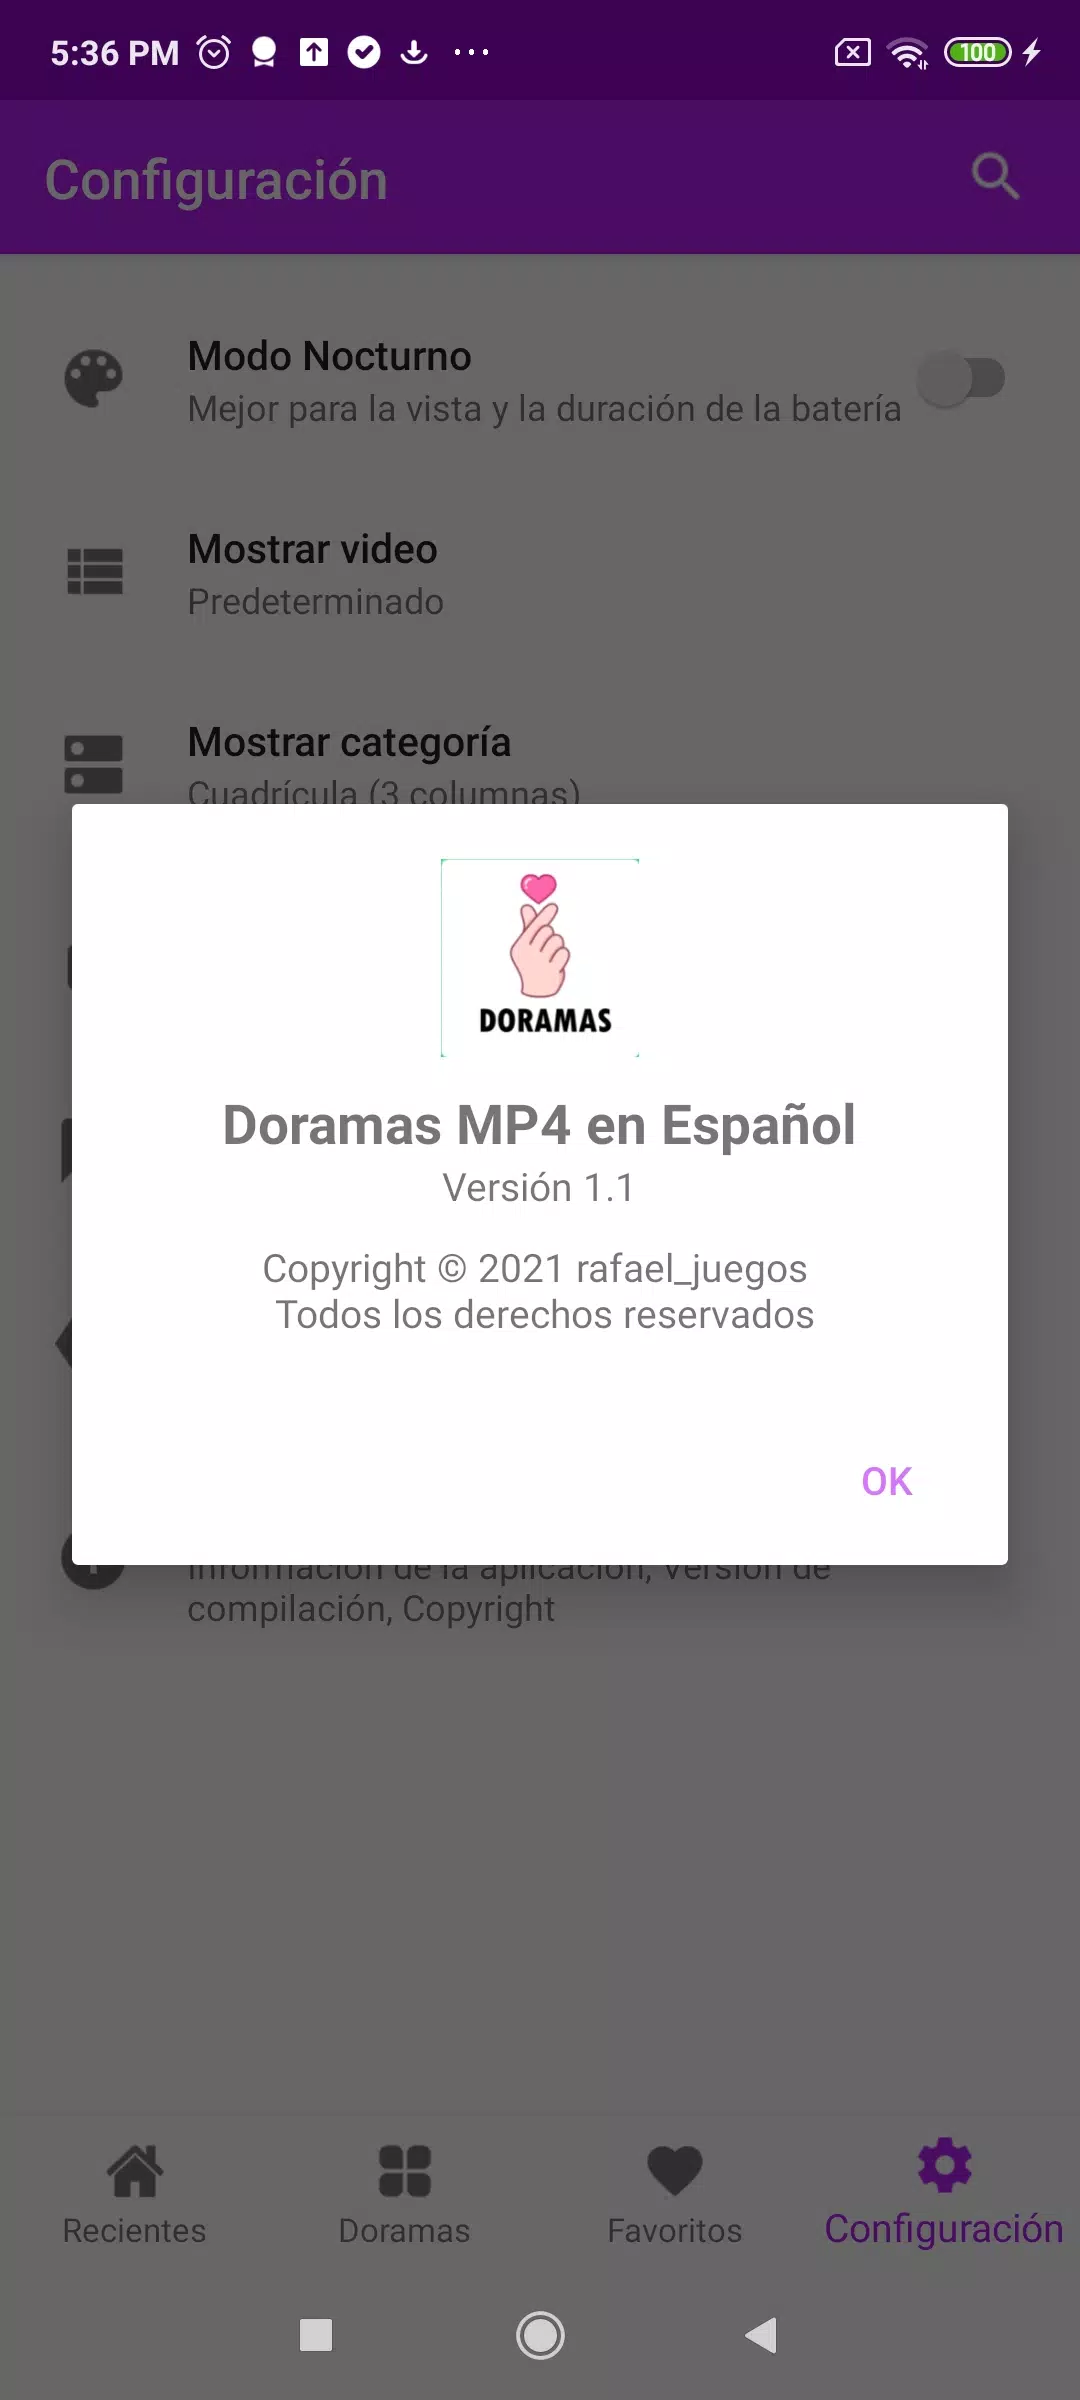 Doramas MP4 en Español APK for Android Download